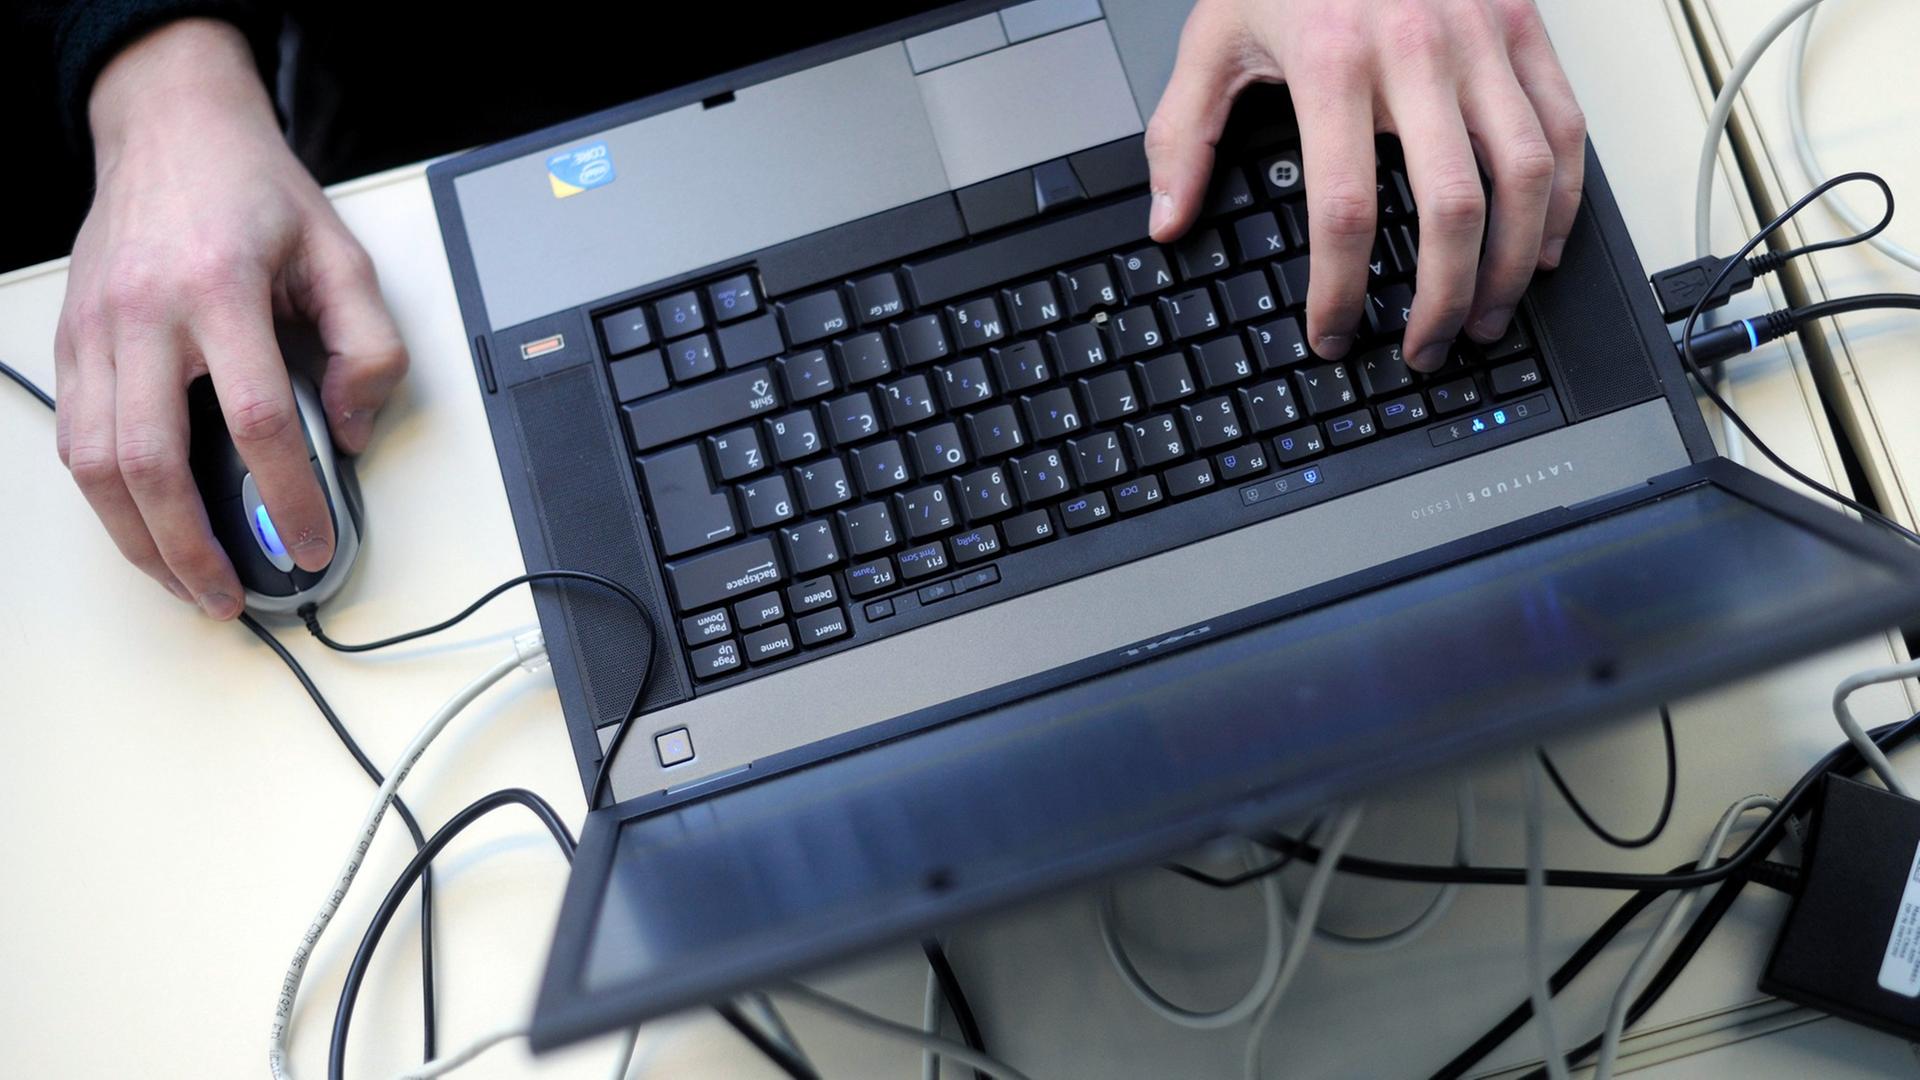 Eine Person bedient einen Laptop mit einer Mouse.